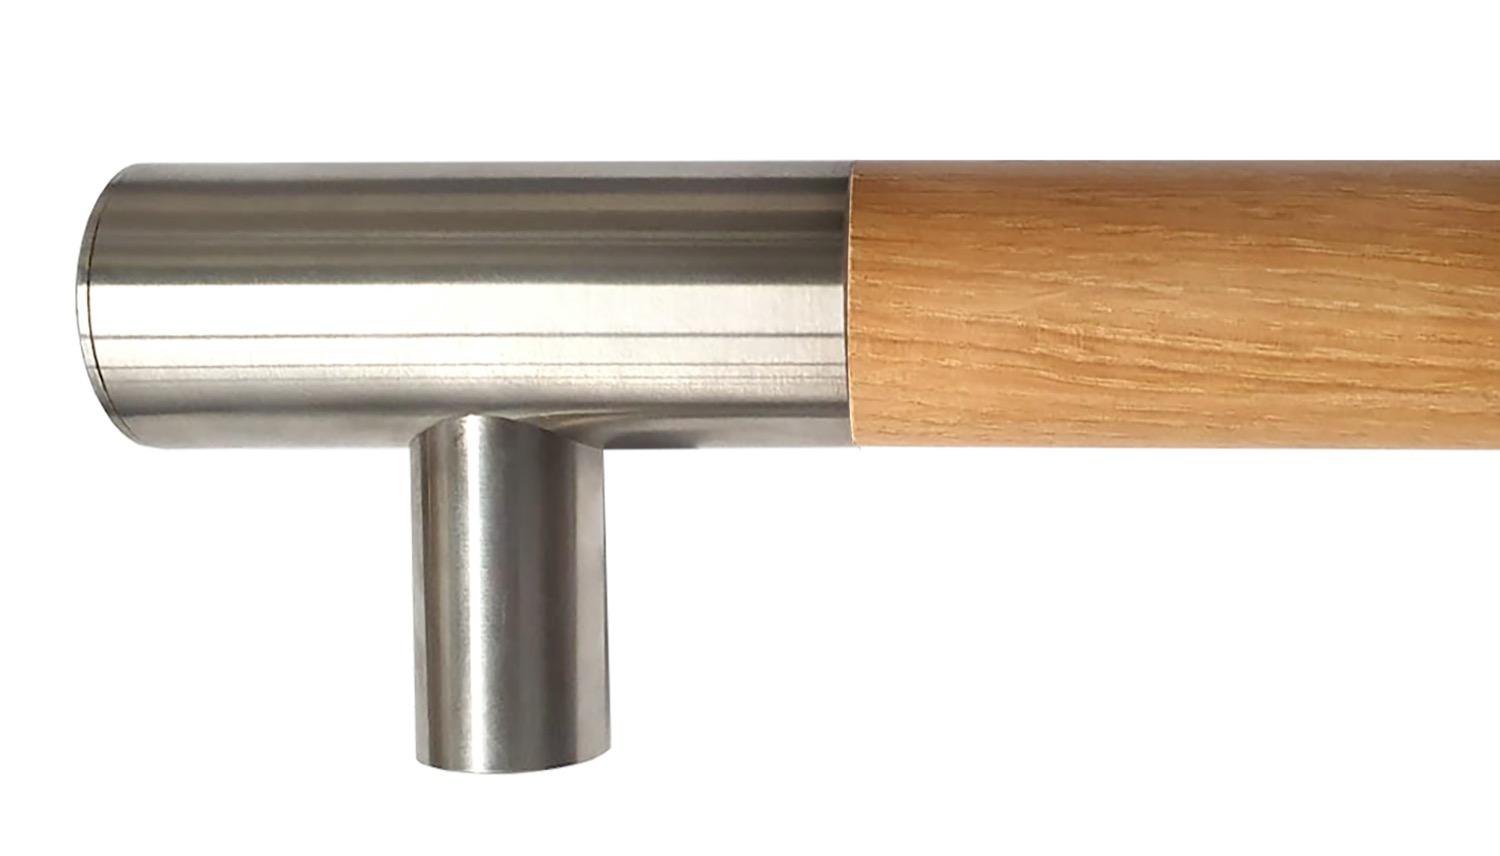 Main courante en bois de chêne avec supports d'extrémité